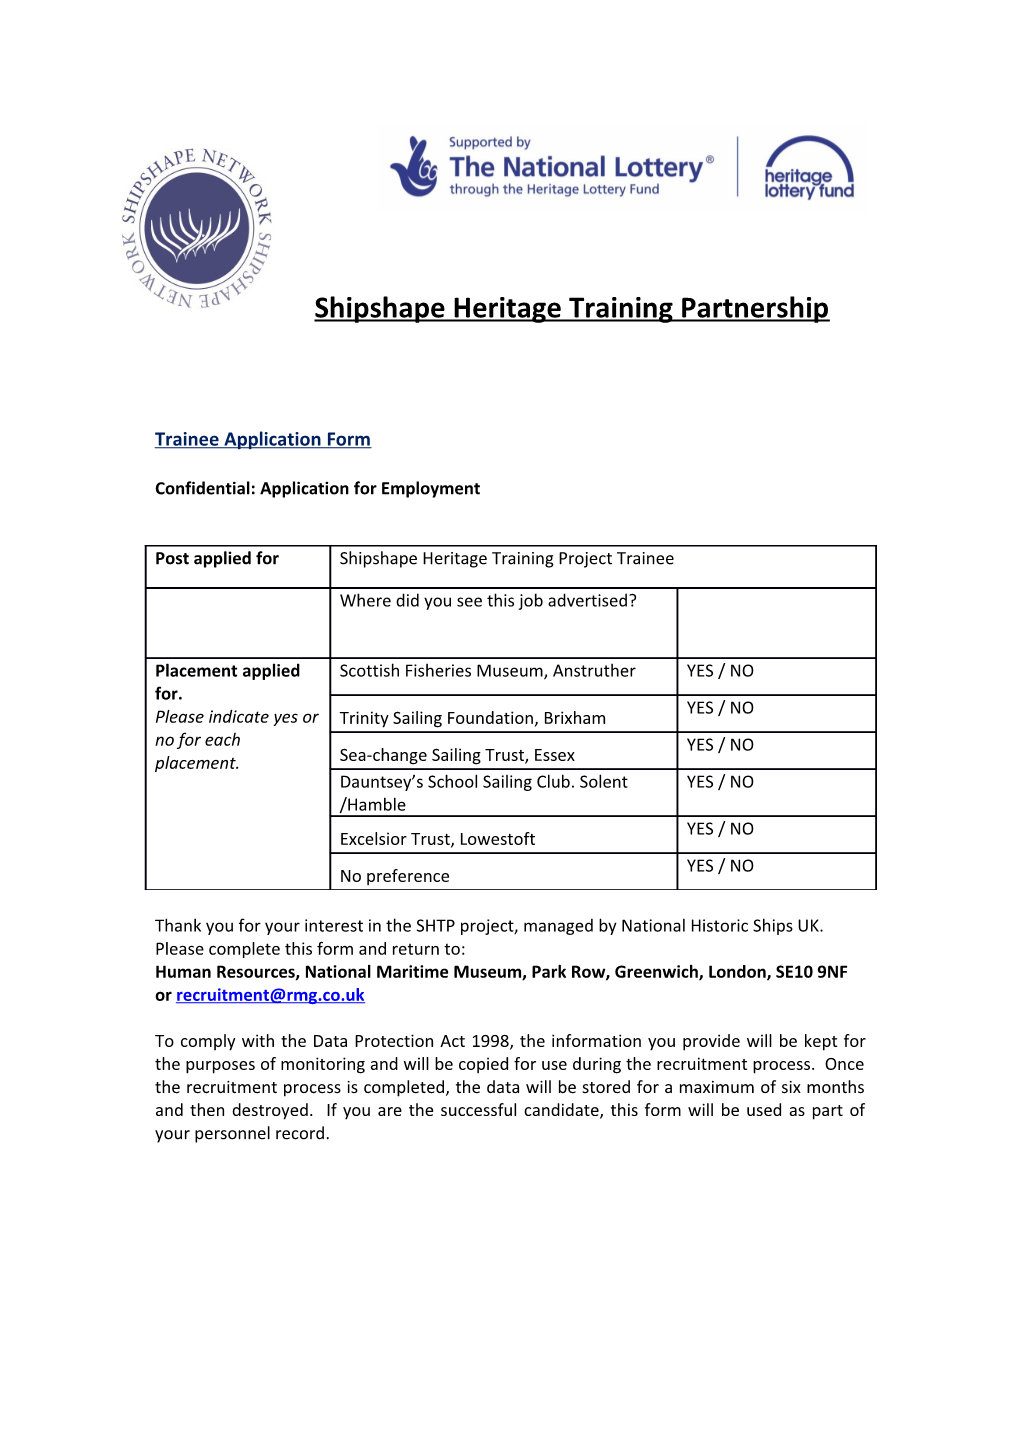 Shipshape Heritage Training Partnership